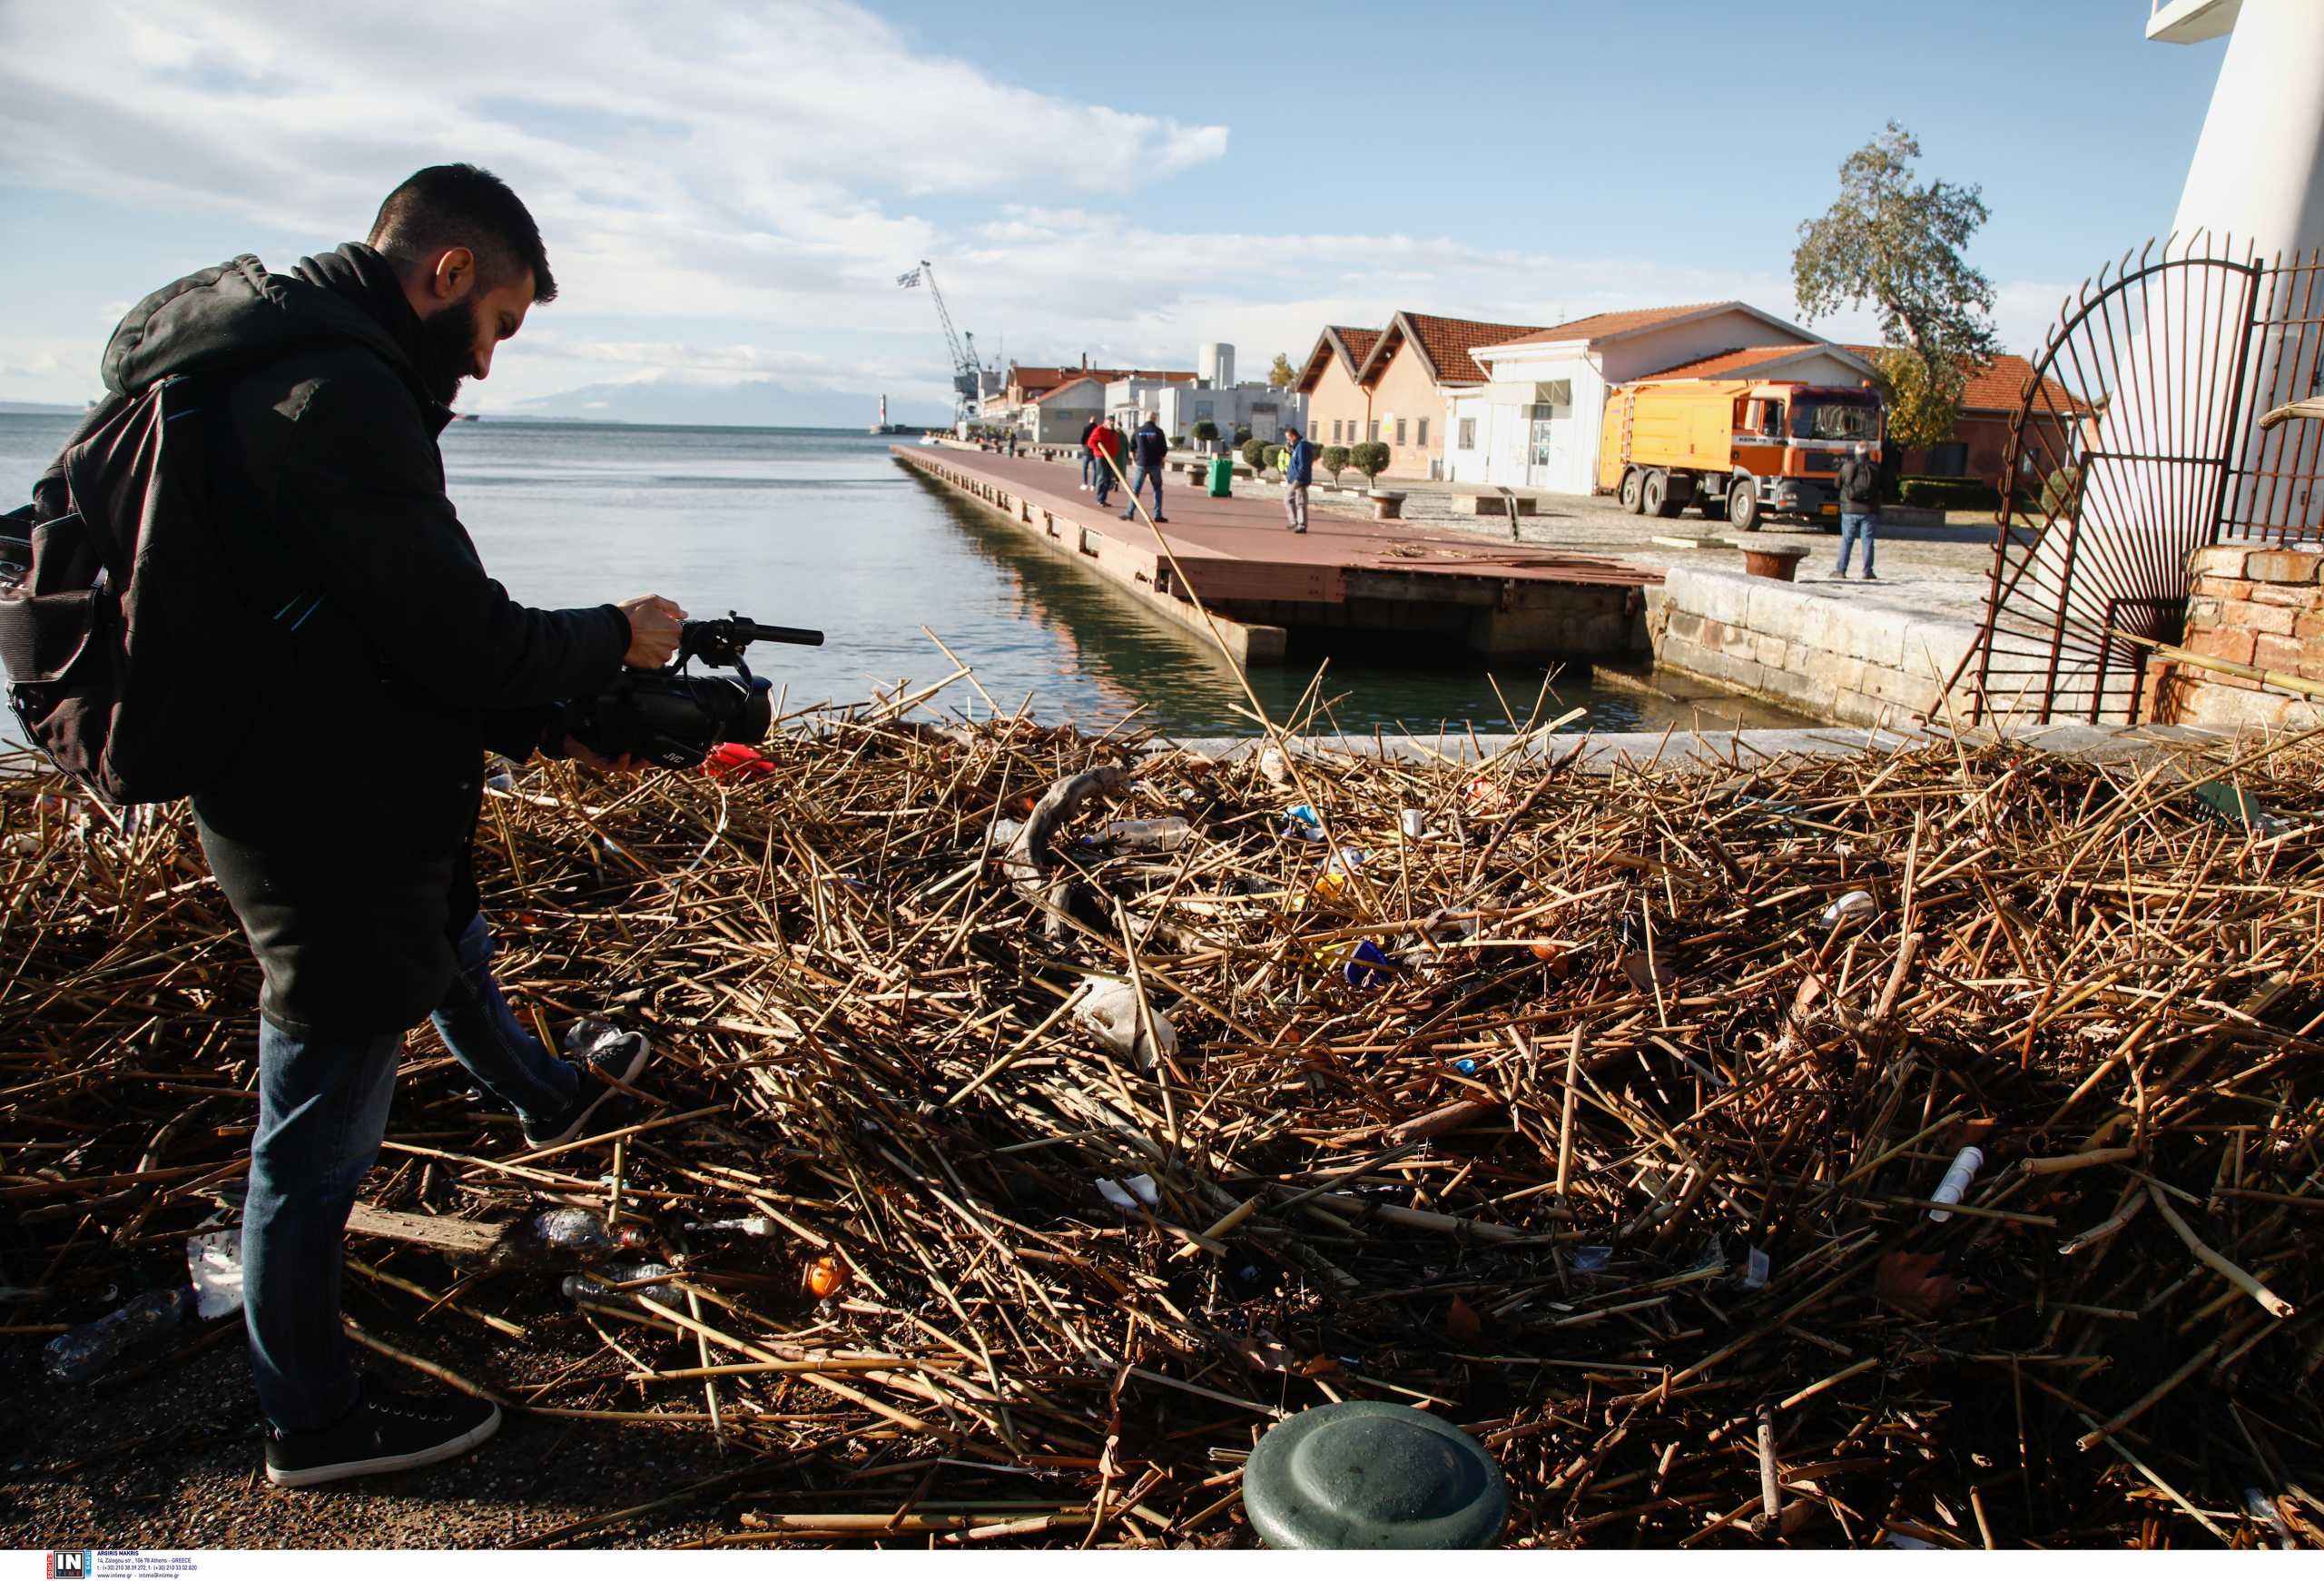 Θεσσαλονίκη: Ο Θερμαϊκός ξέβρασε μεγάλο όγκο από σκουπίδια στην παραλία